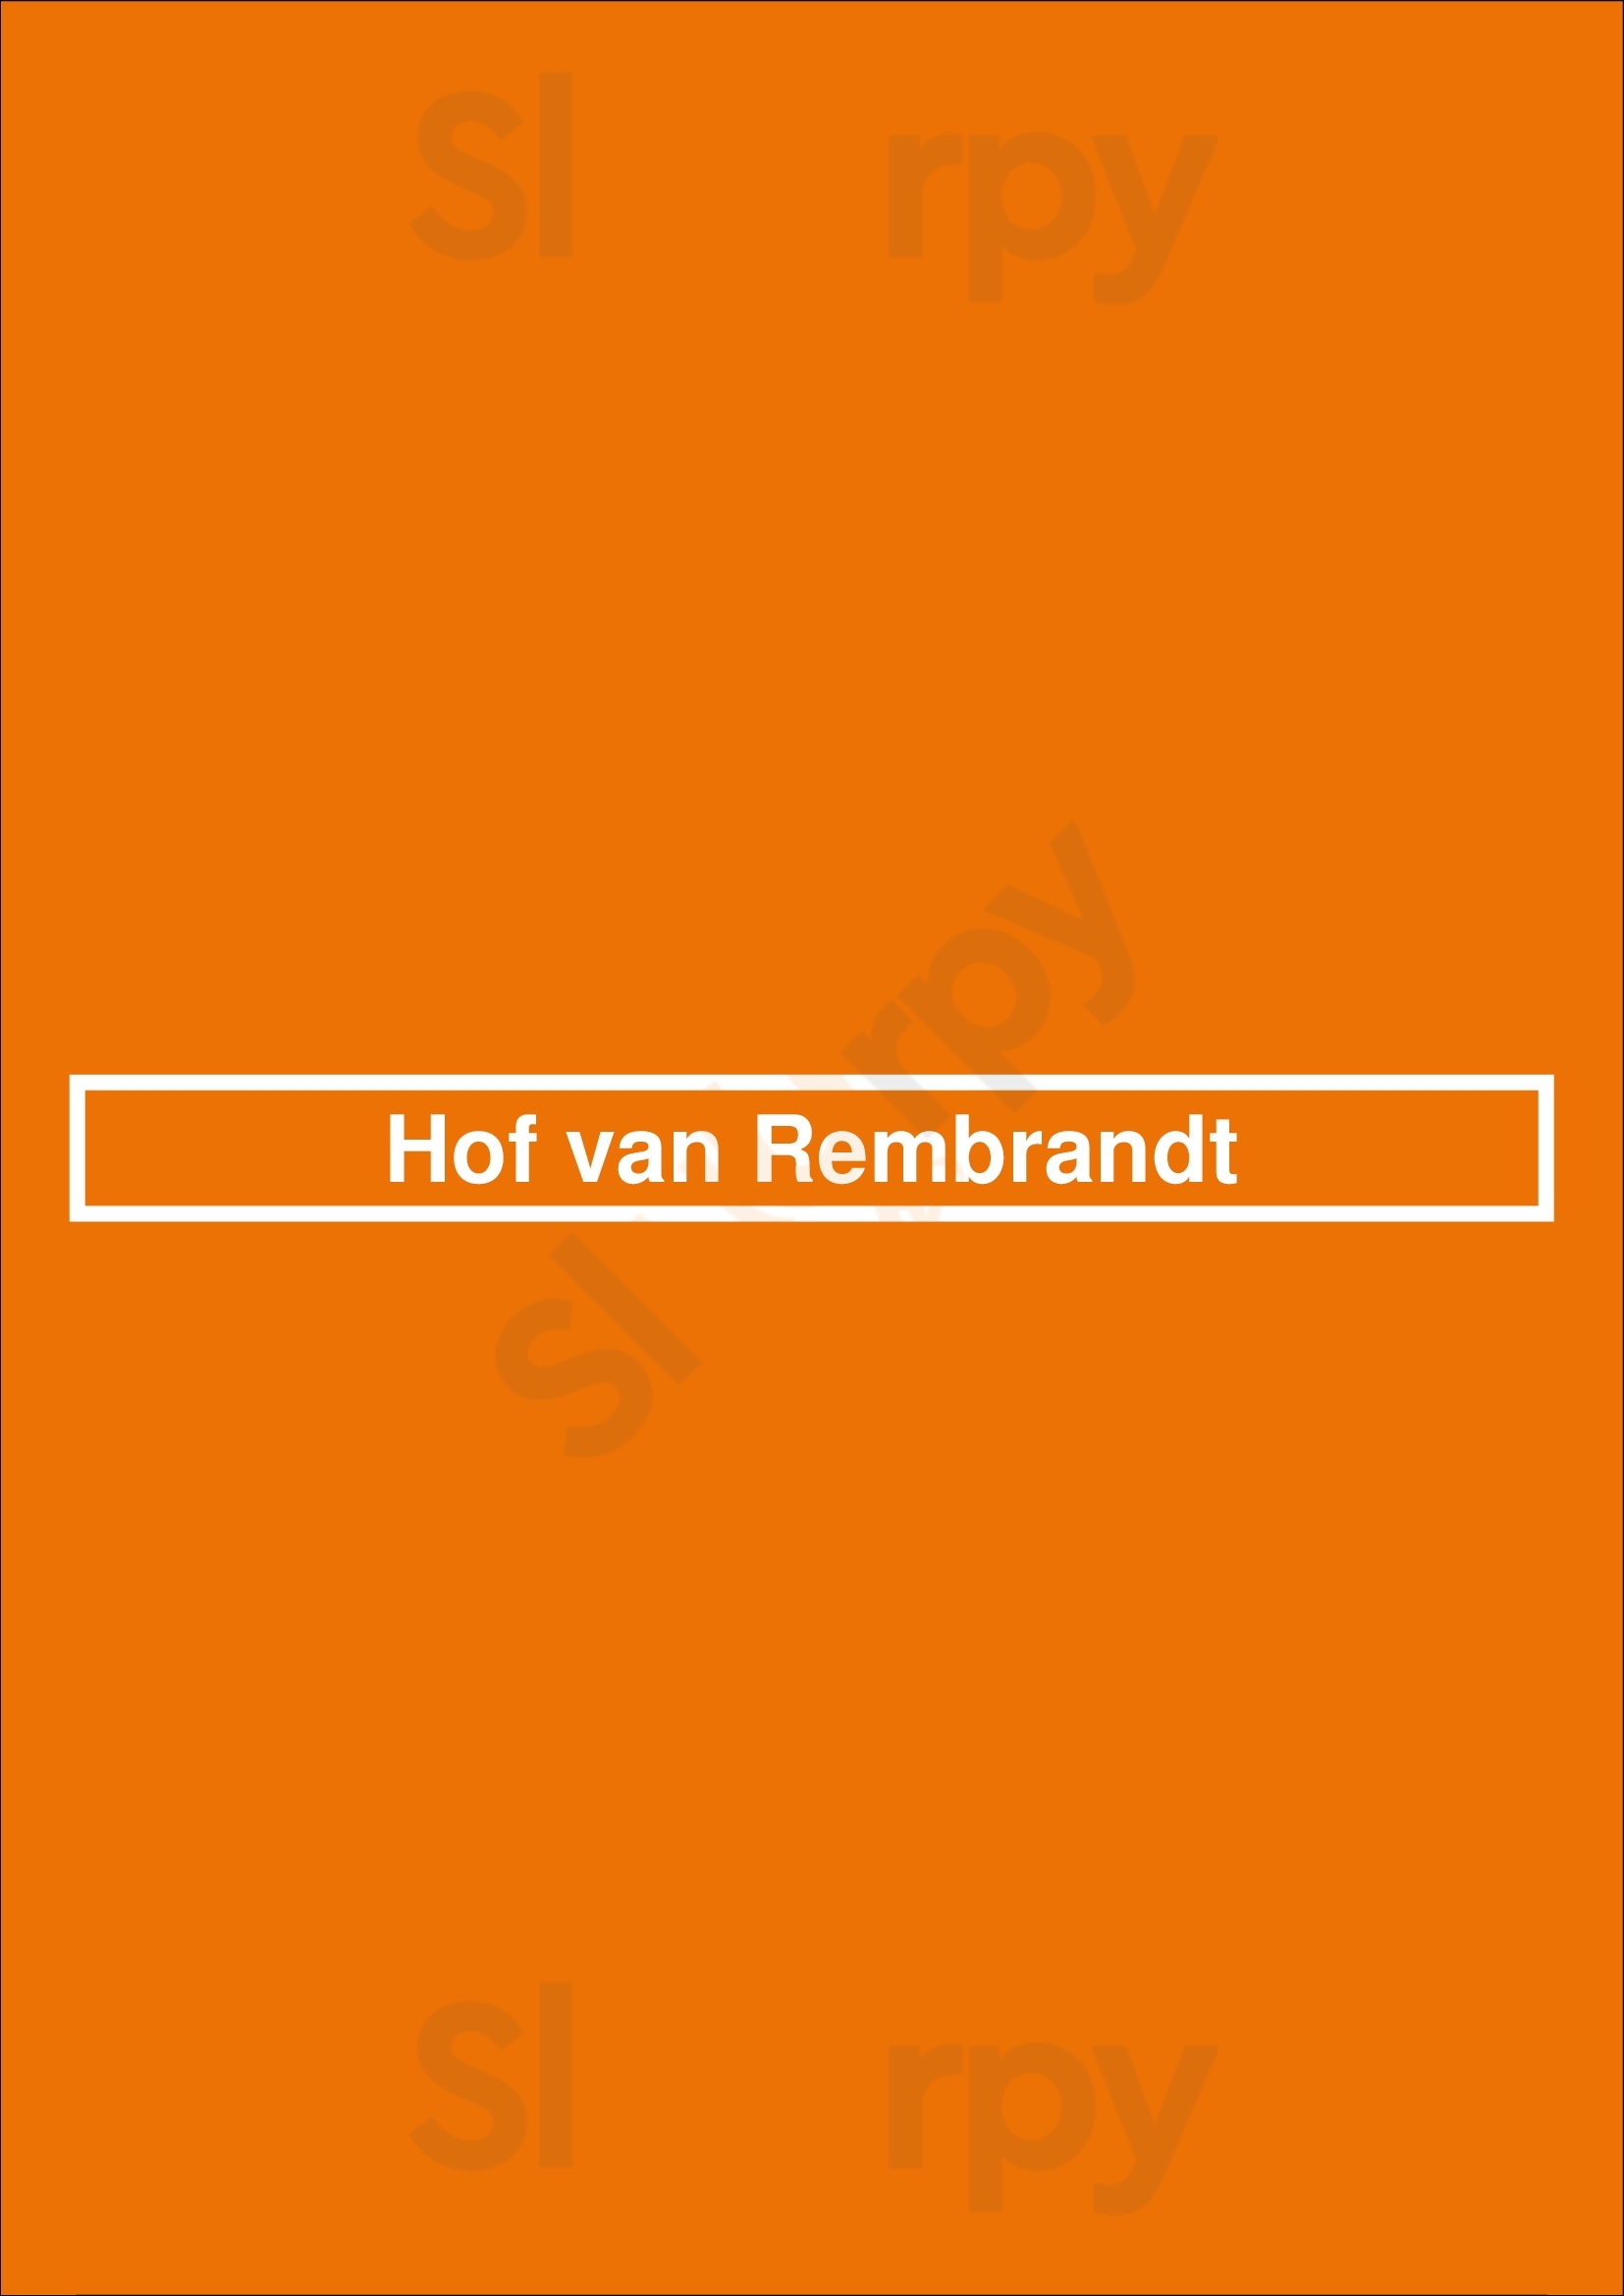 Hof Van Rembrandt Bruges Menu - 1